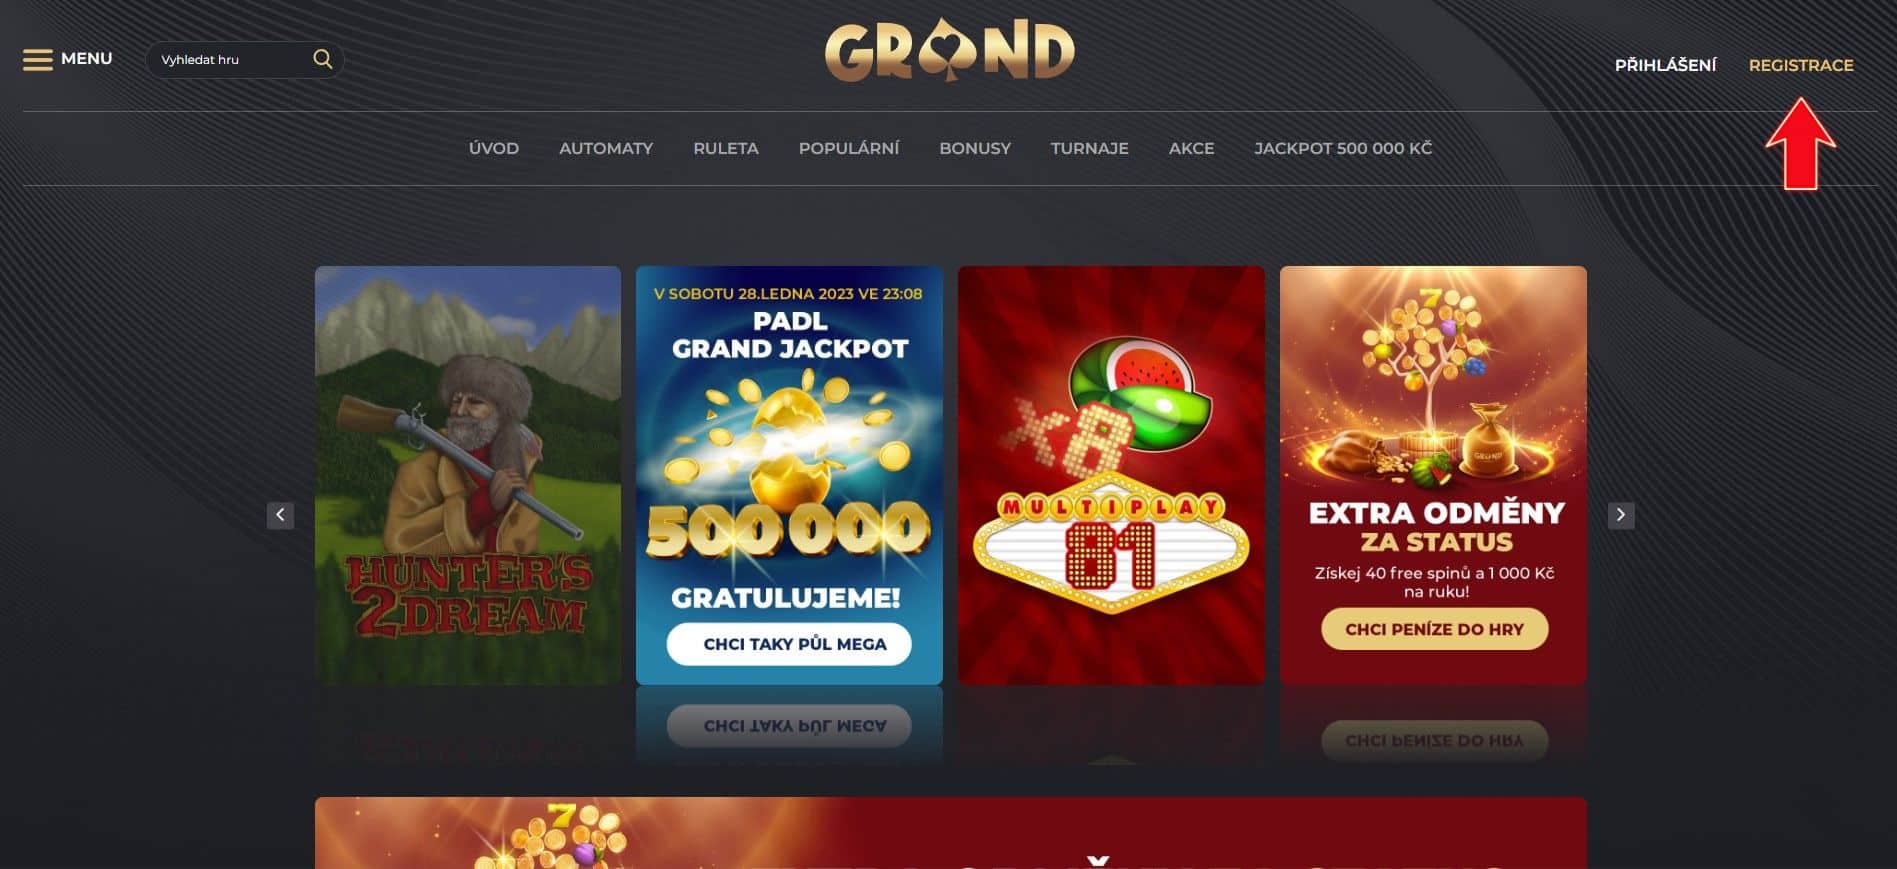 GrandWin Casino registrace